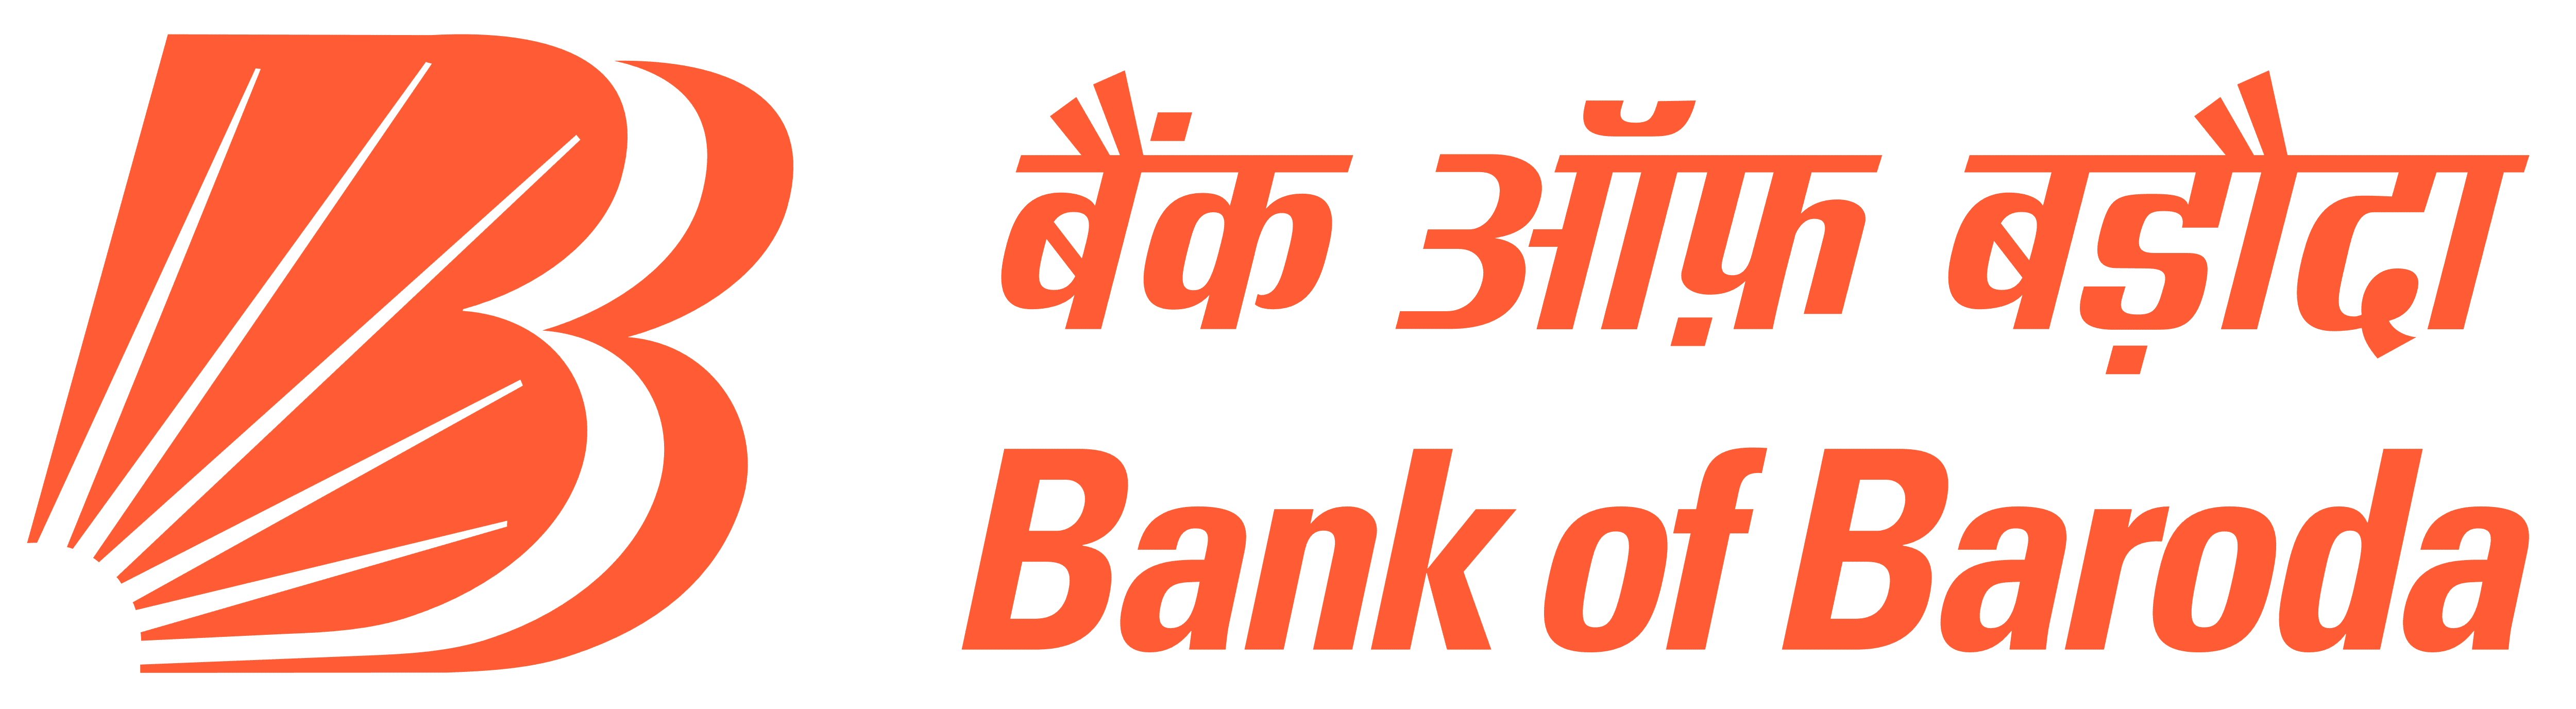 Bank Of Baroda - AK Enterprises